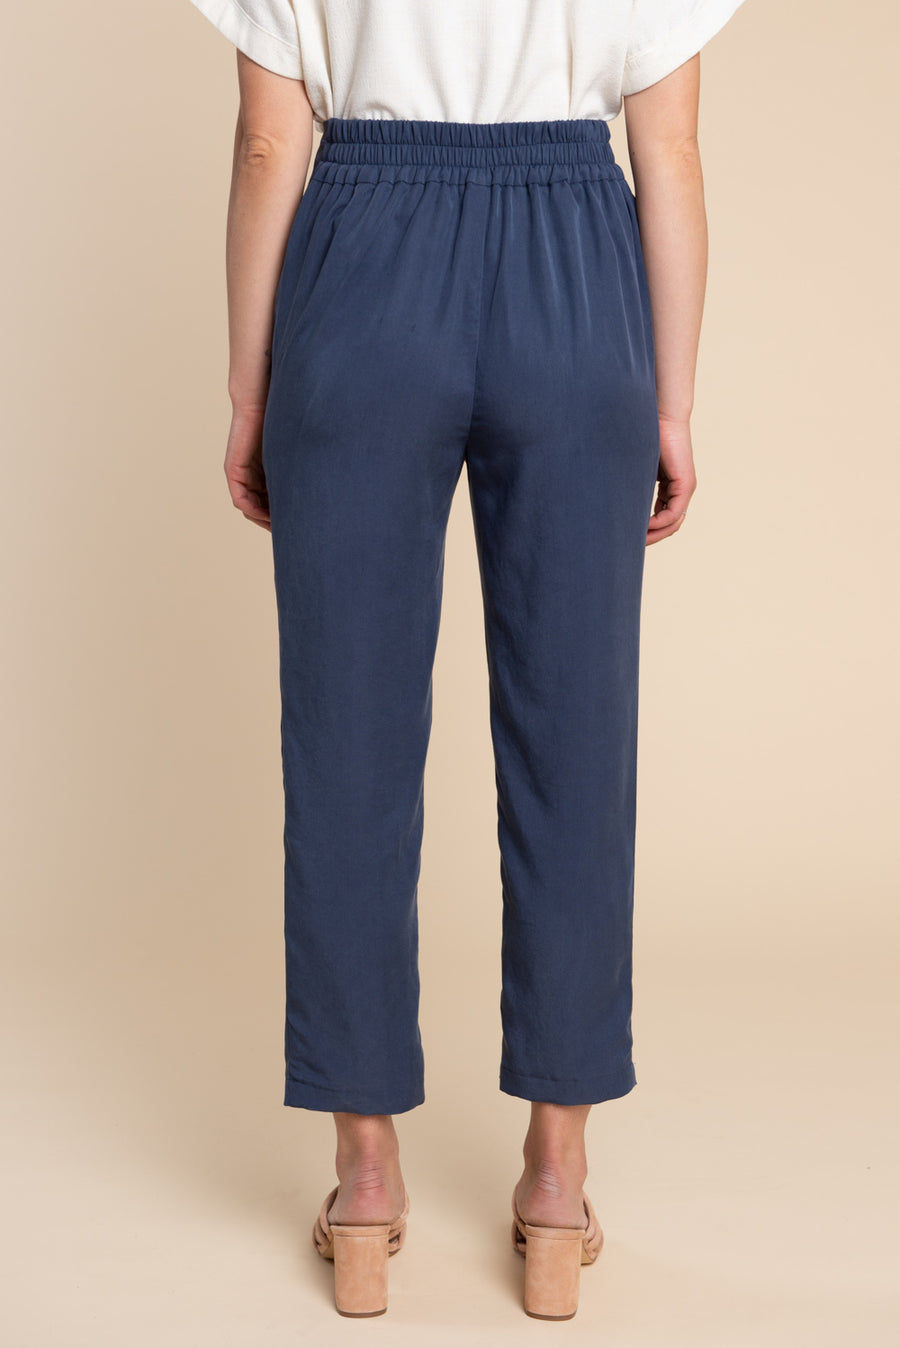 Pietra Pants & Shorts Pattern - Tapered legged elastic waist pants pattern | Closet Core Patterns